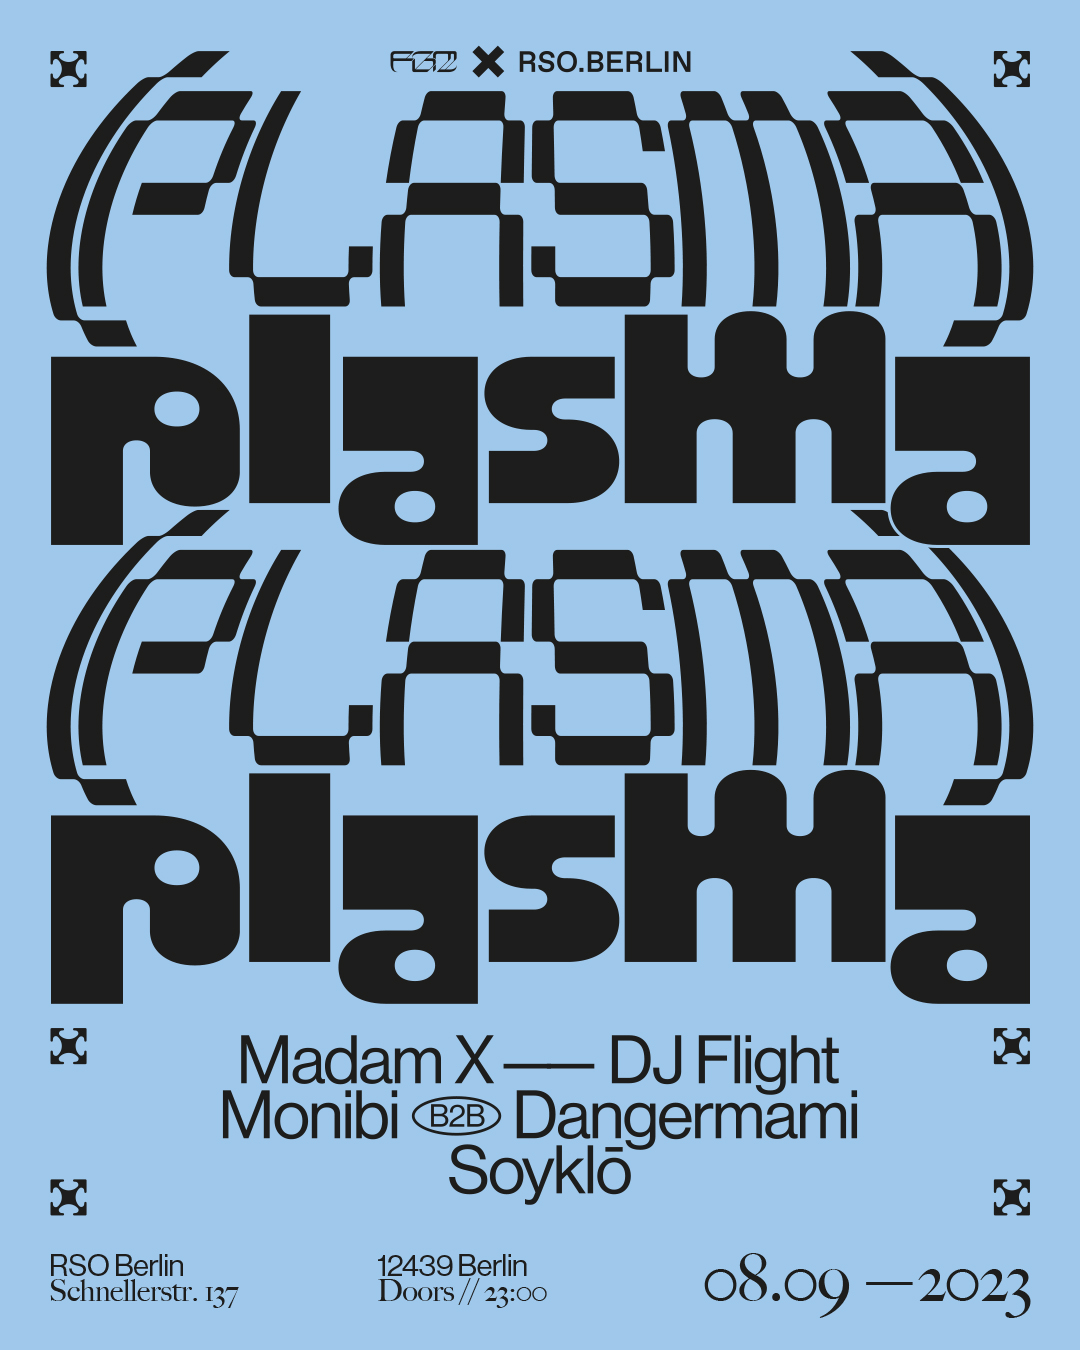 08.09.   Plasma with DJ Flight, Madam X, Soyklo, Monibi b2b Dangermami